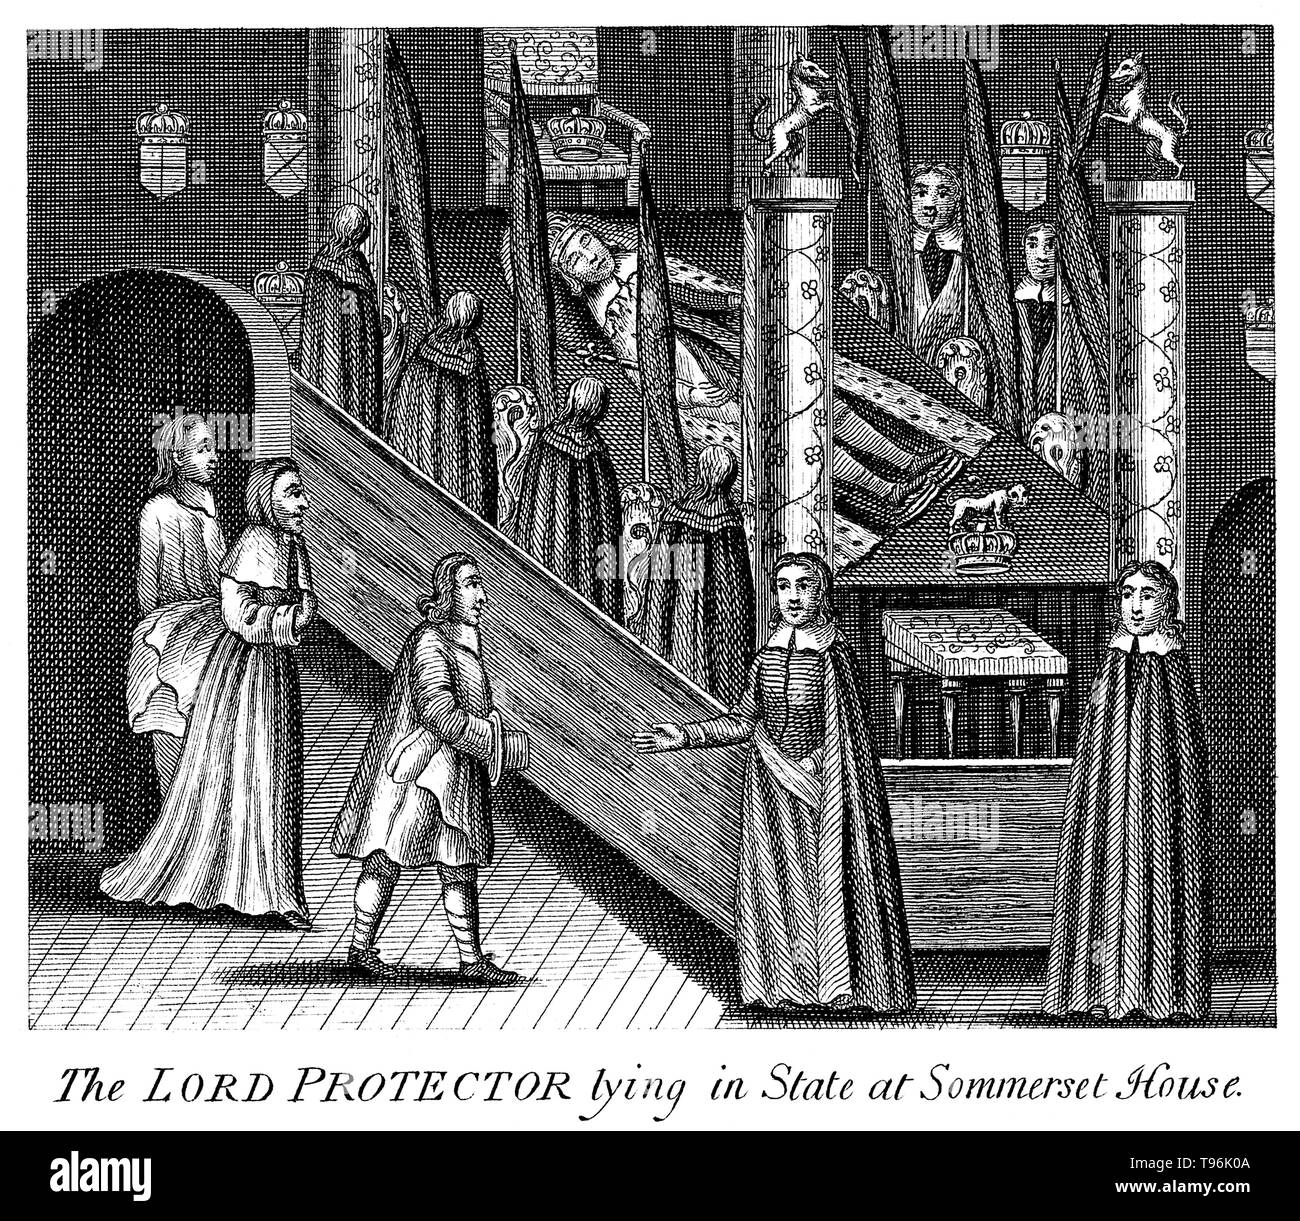 Le Seigneur Protecteur, Oliver Cromwell, couché dans la région de Somerset House, entouré de personnes en deuil. Oliver Cromwell (25 avril 1599 - 3 septembre 1658) était un chef militaire et politique. Il a occupé le poste de lord protecteur du Commonwealth de l'Angleterre, d'Écosse et d'Irlande à partir de 1653 jusqu'à sa mort, agissant à la fois en tant que chef de l'État et chef du gouvernement de la nouvelle république. Banque D'Images